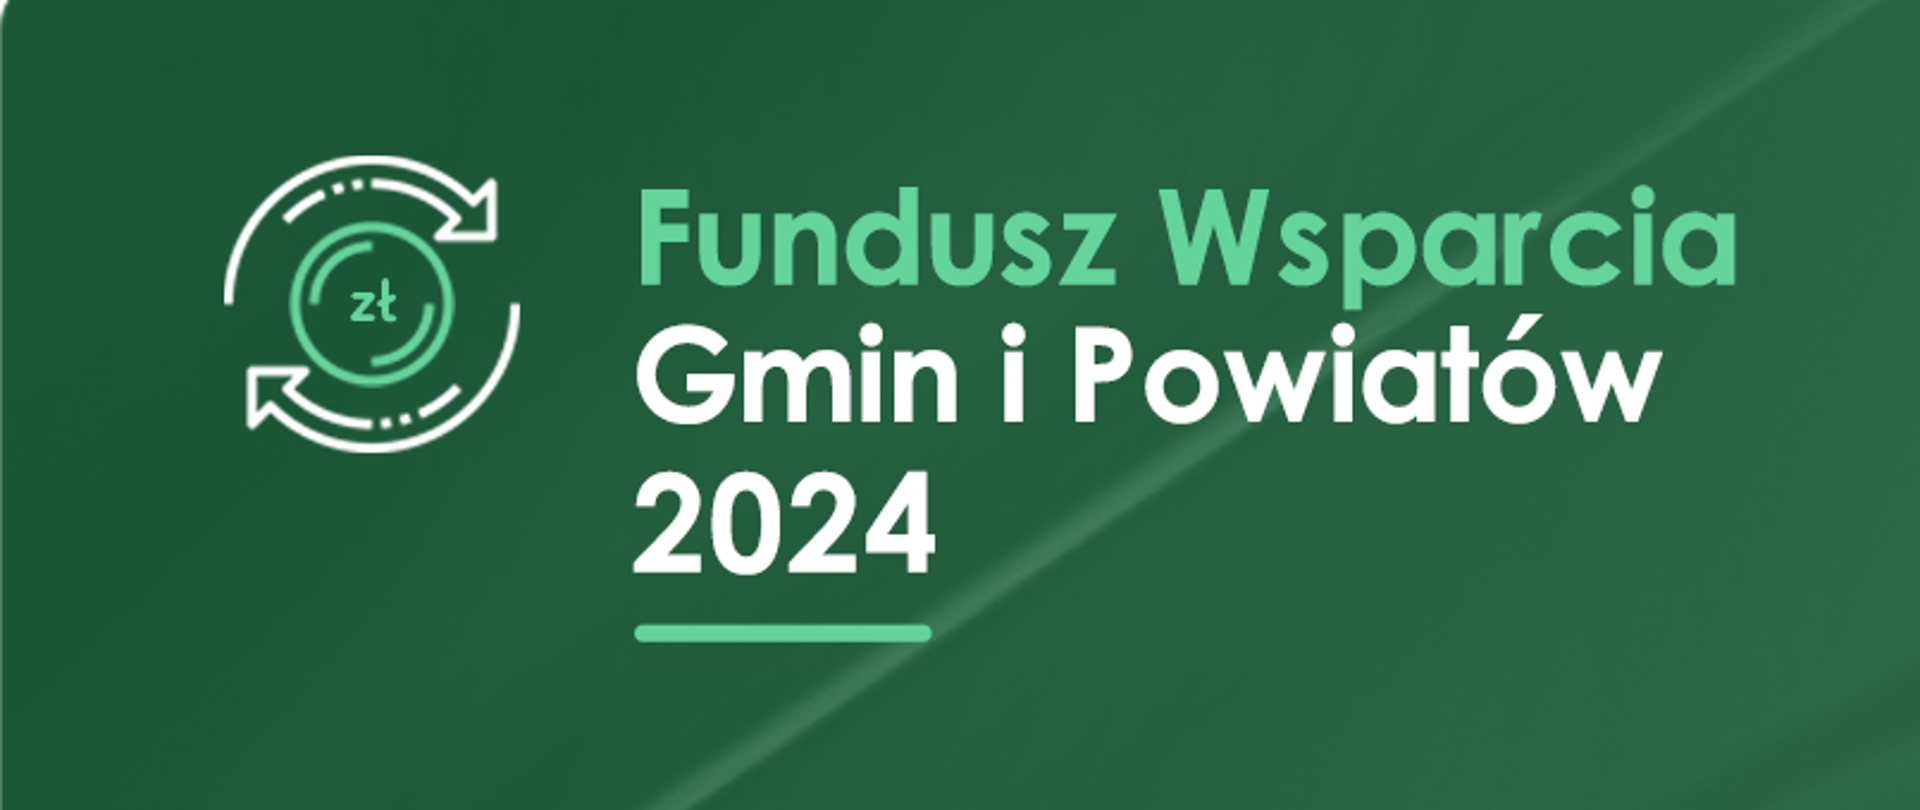 Baner Fundusz Wsparcia Gmin i Powiatów 2024